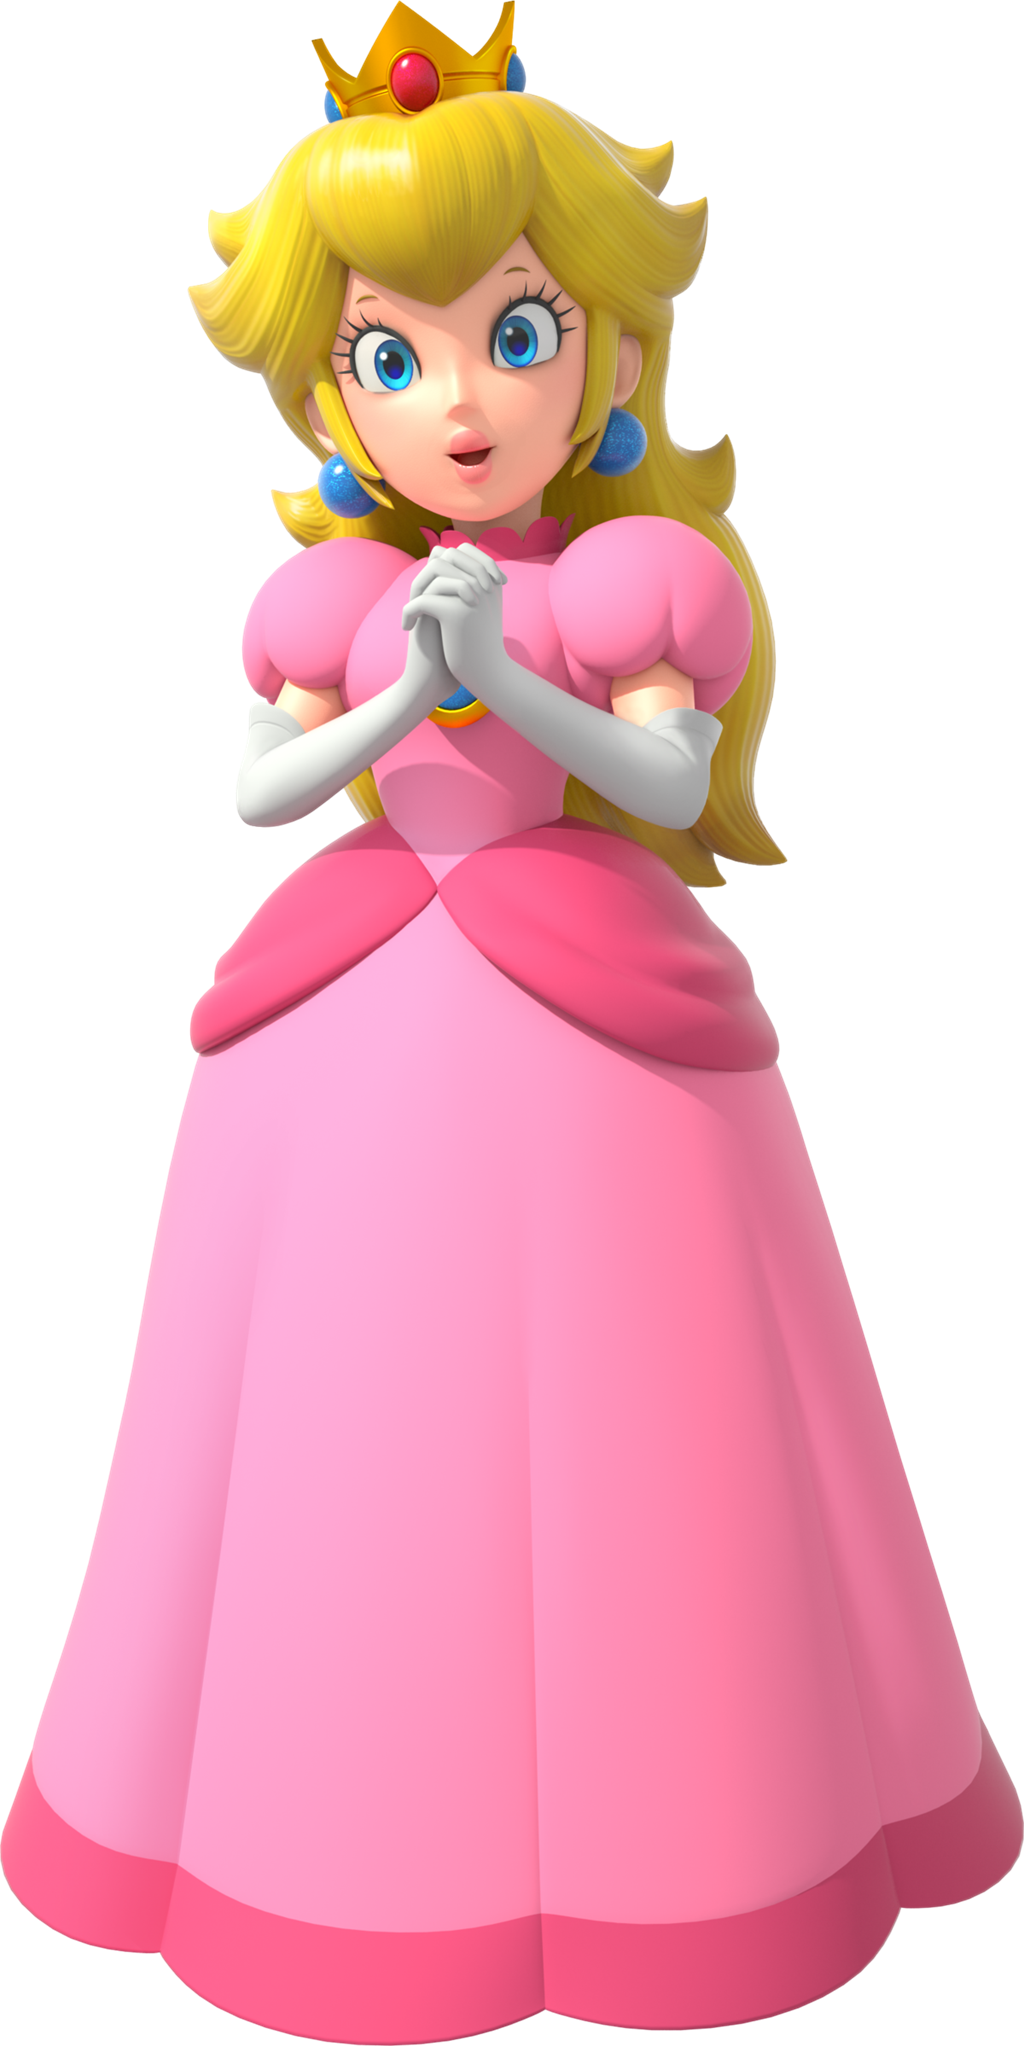 Princess Peach Rhythm Heaven Super Mario D World Hot Sex Picture 